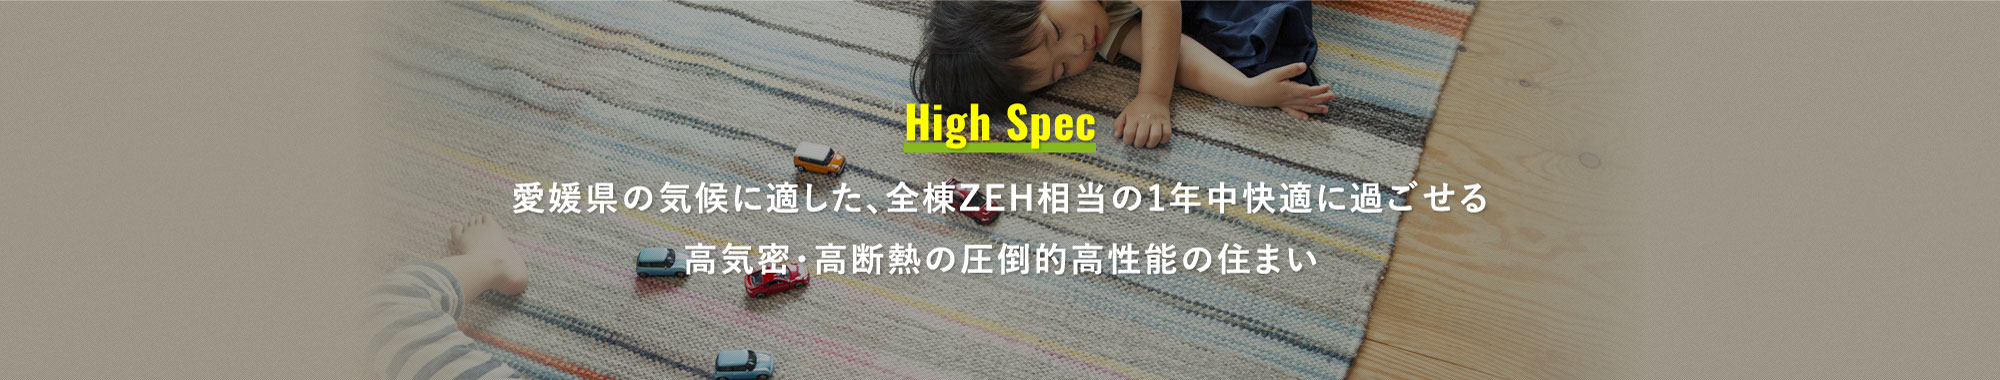 愛媛県の気候に適した、全棟ZEH相当の1年中快適な高気密・高断熱の圧倒的高性能の住まい